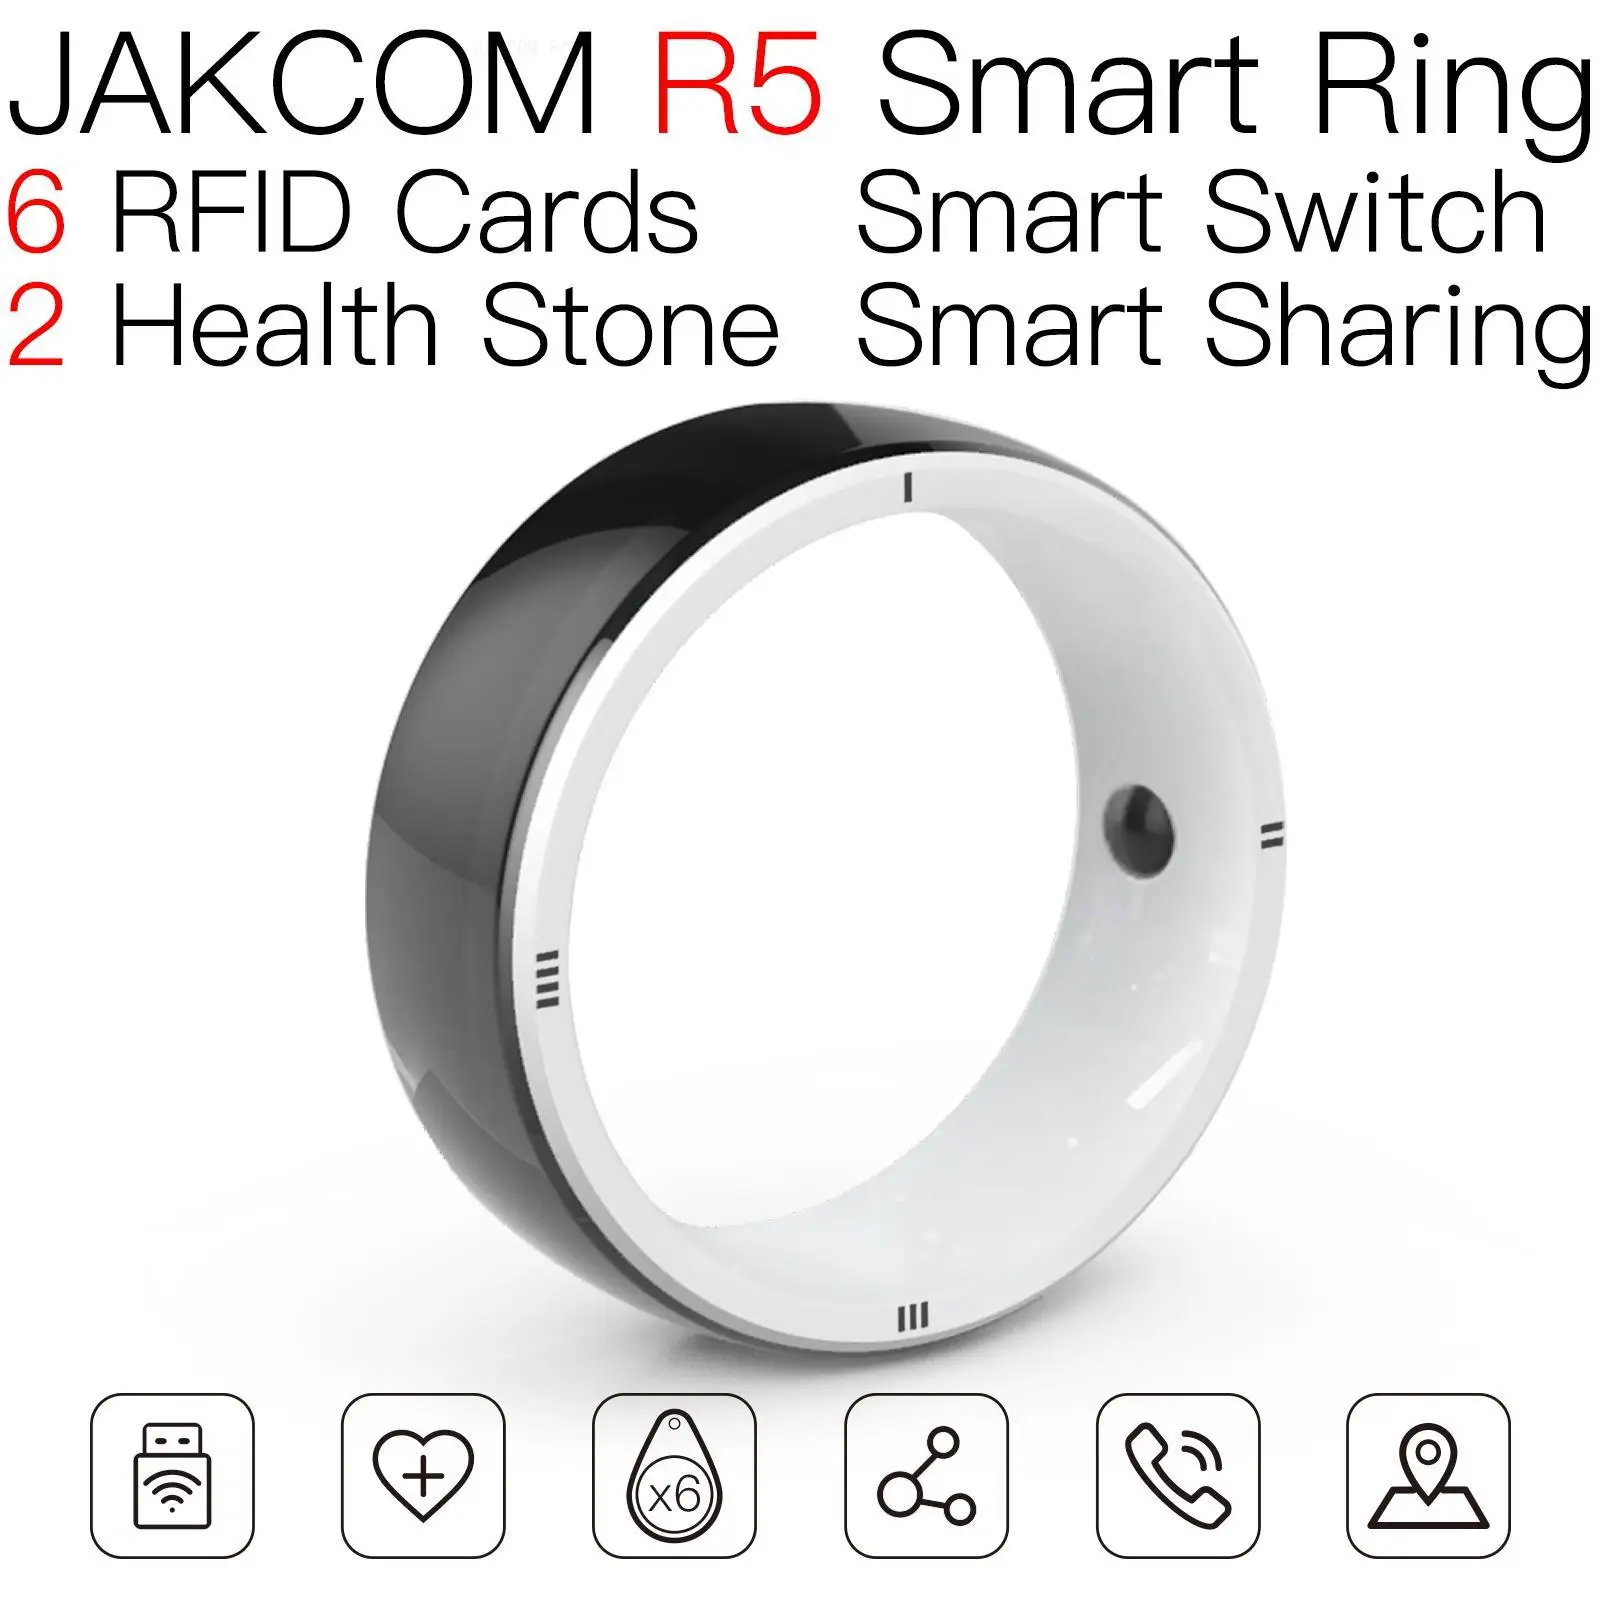 

JAKCOM R5 Smart Ring Super value than em marine 125khz rewritable syringes rfid tag key copy cards contactless metal card smart